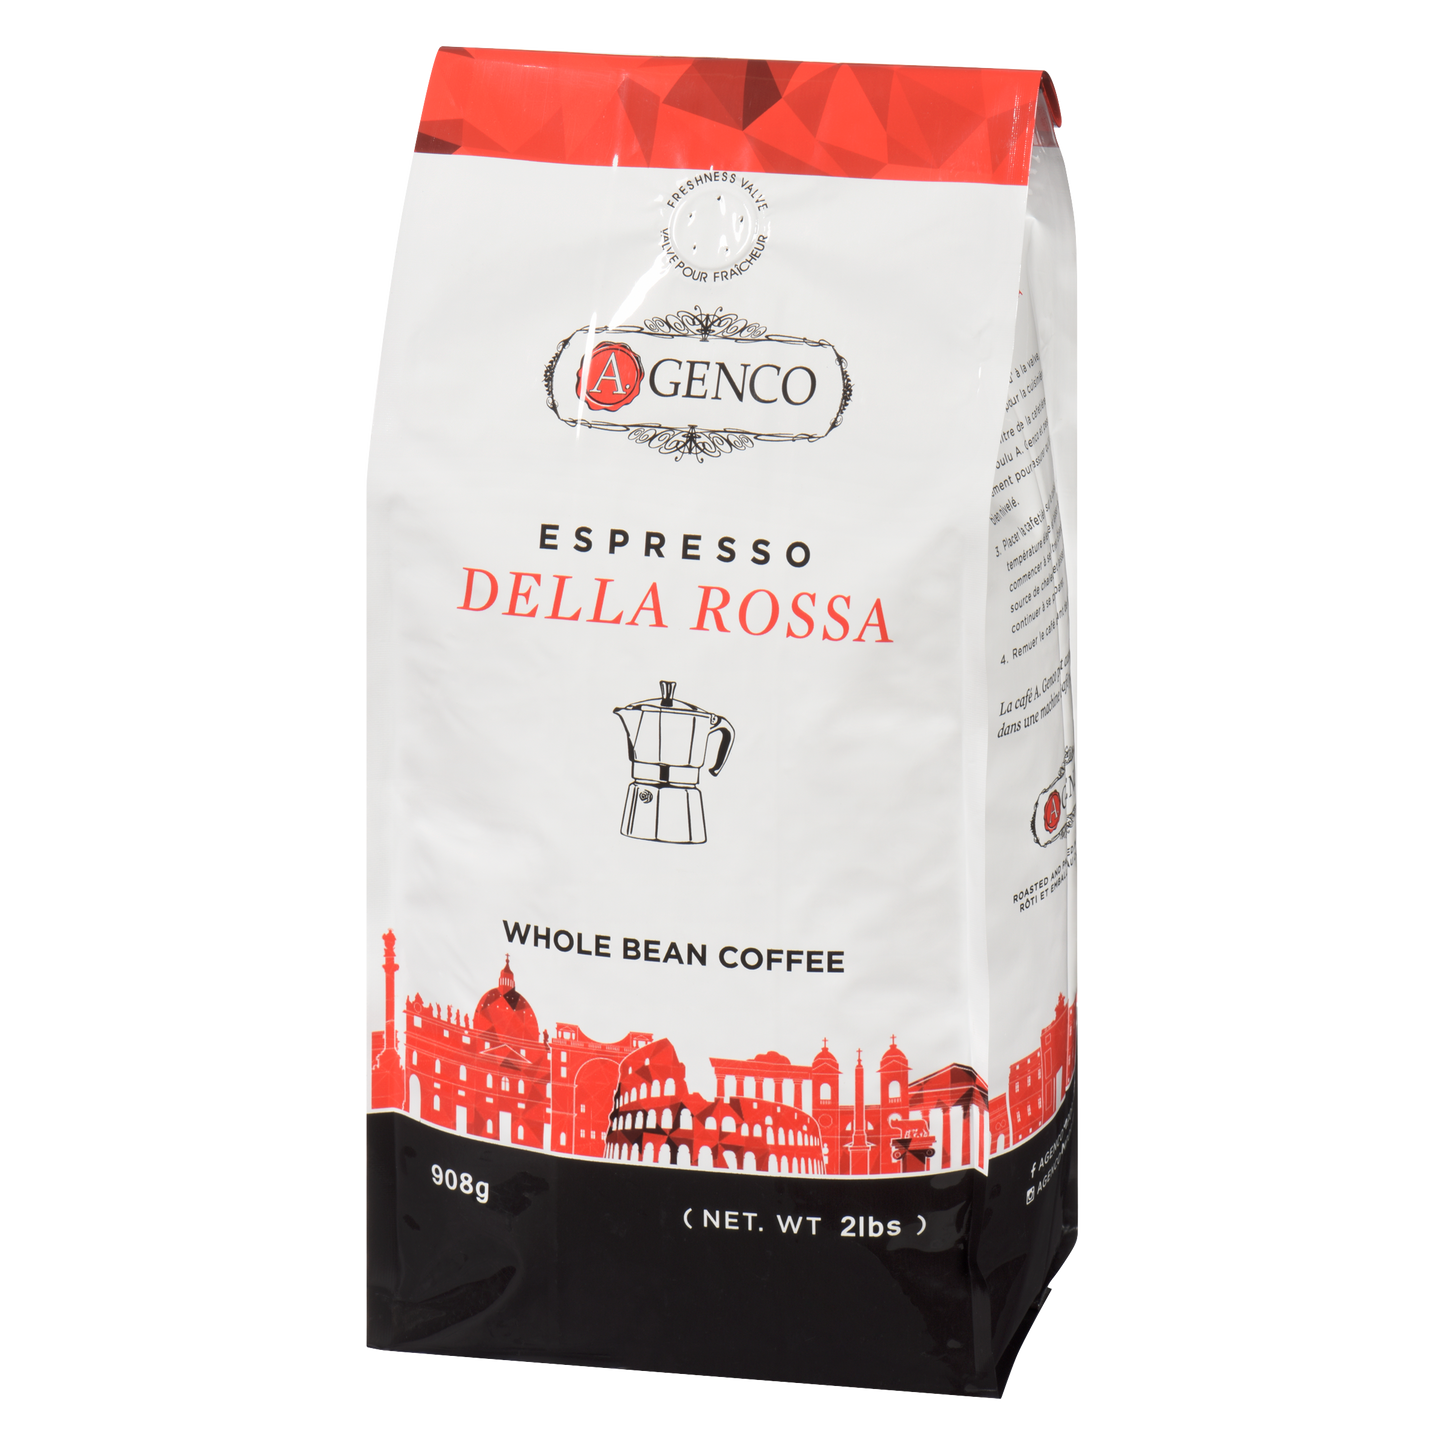 Whole Bean A.Genco Della Rossa Espresso Coffee - Value Sized Italian Espresso - 908 Grams